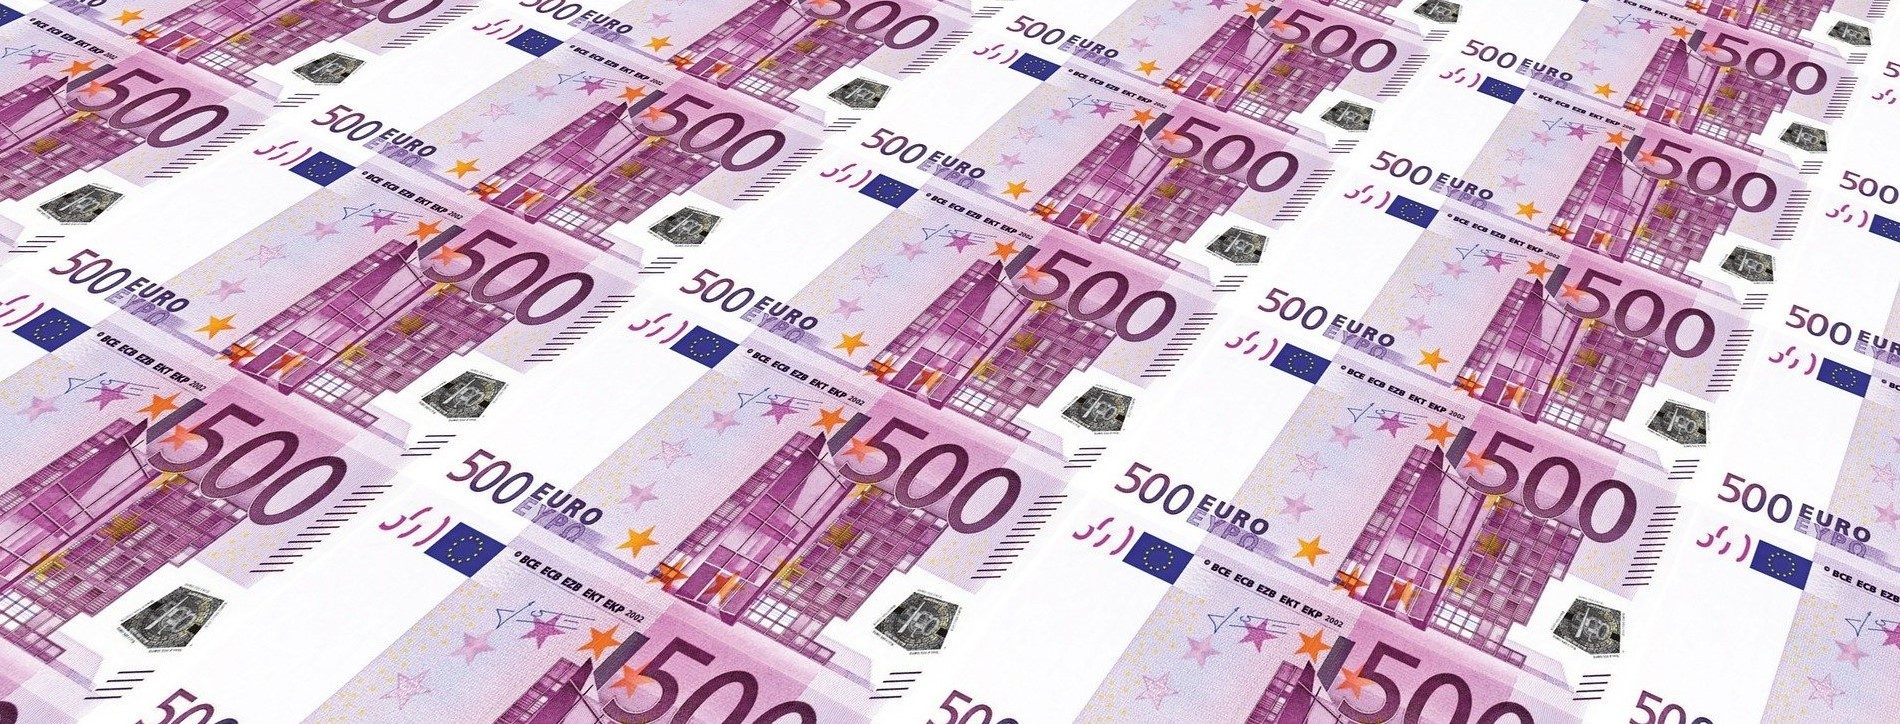 Geld - Foto: Geralt (Pixabay)